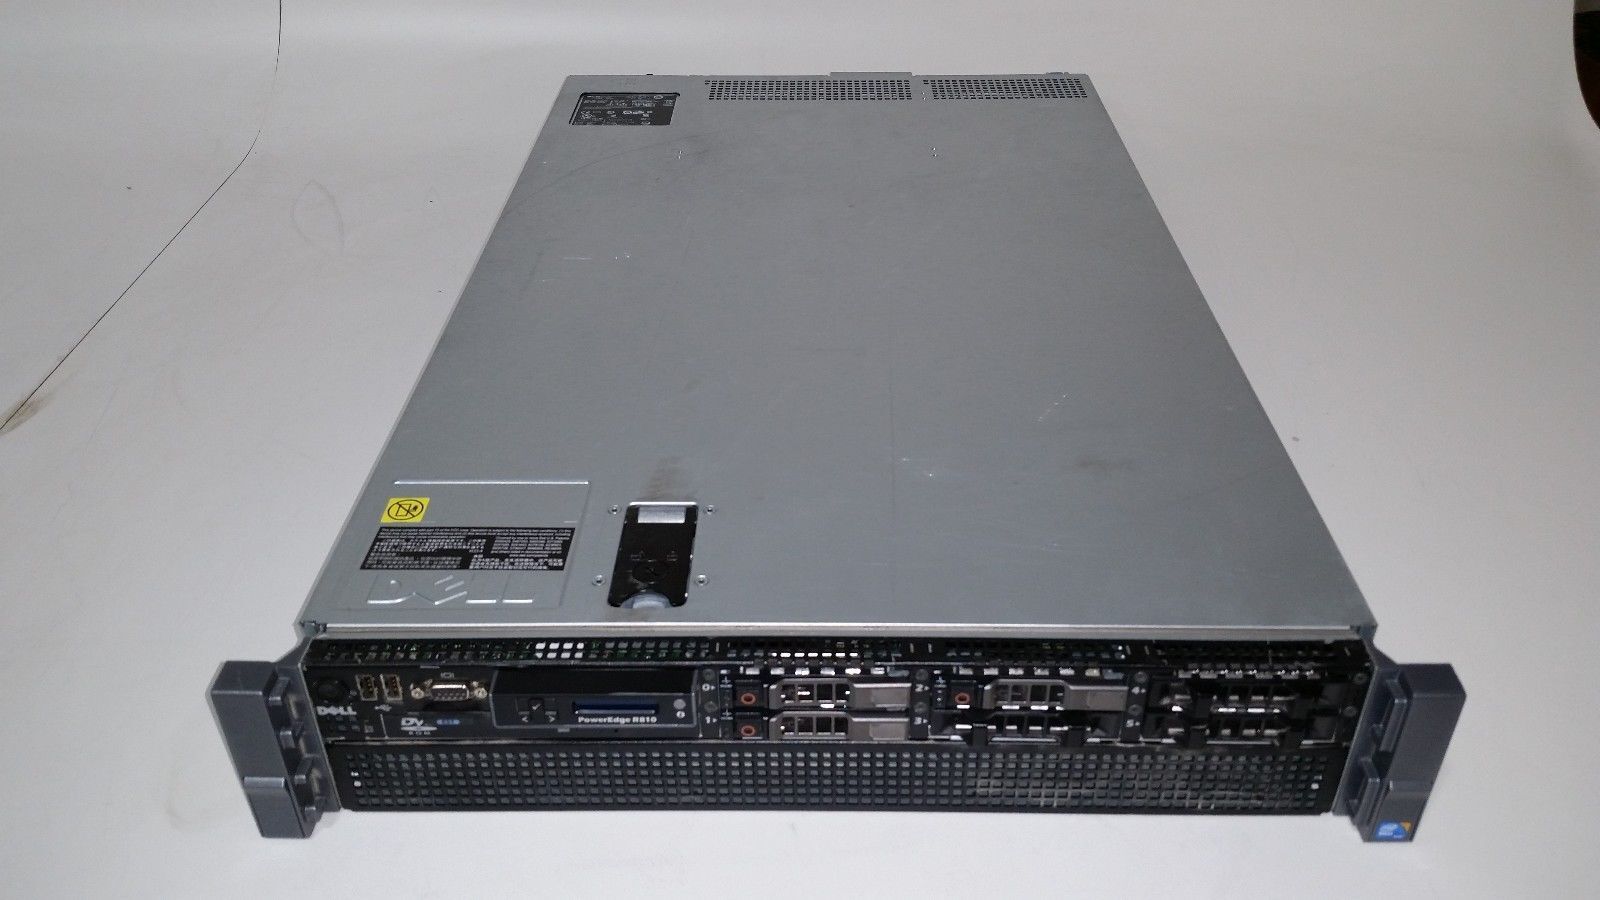 Dell Poweredge R810 4x Xeon E7-4870 2.4ghz 40-Cores / 64gb / 3x 146gb 10k / H700